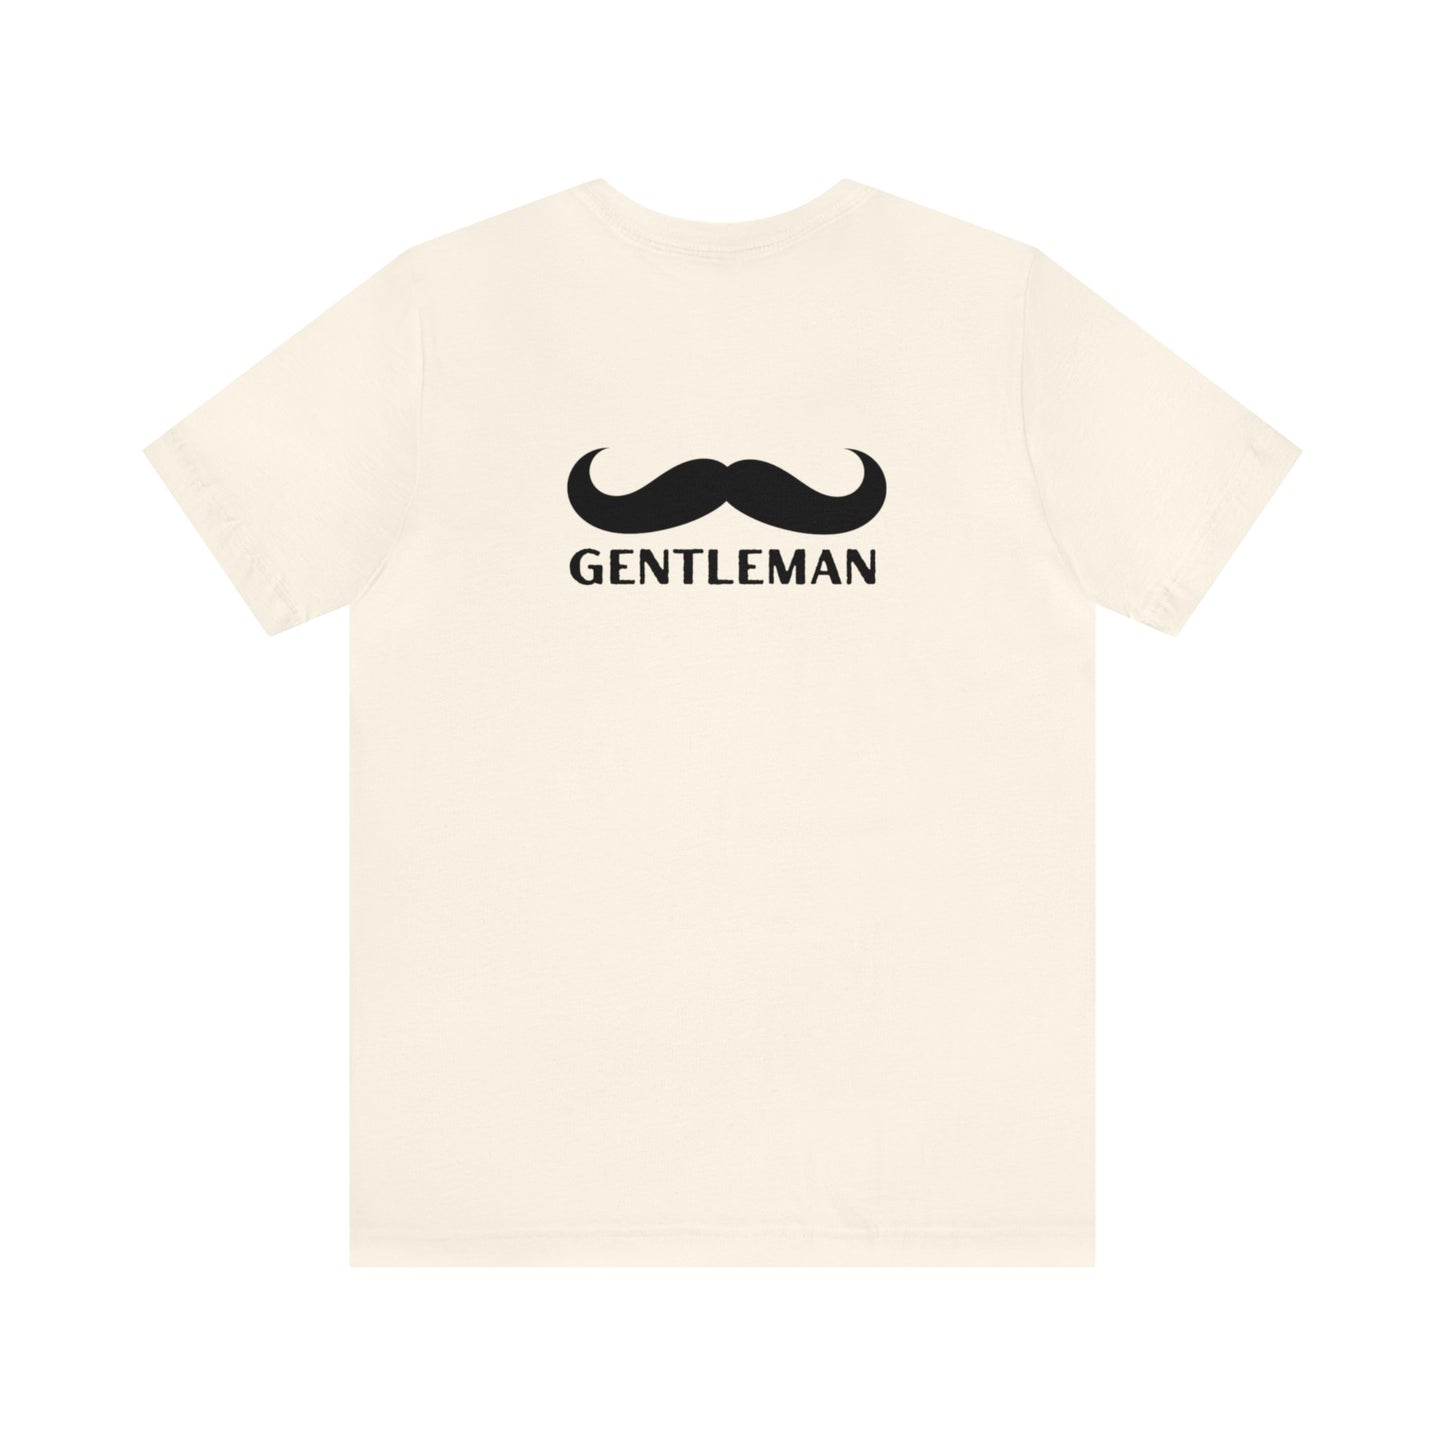 جنتلمن - Gentleman Jersey Short Sleeve Tee